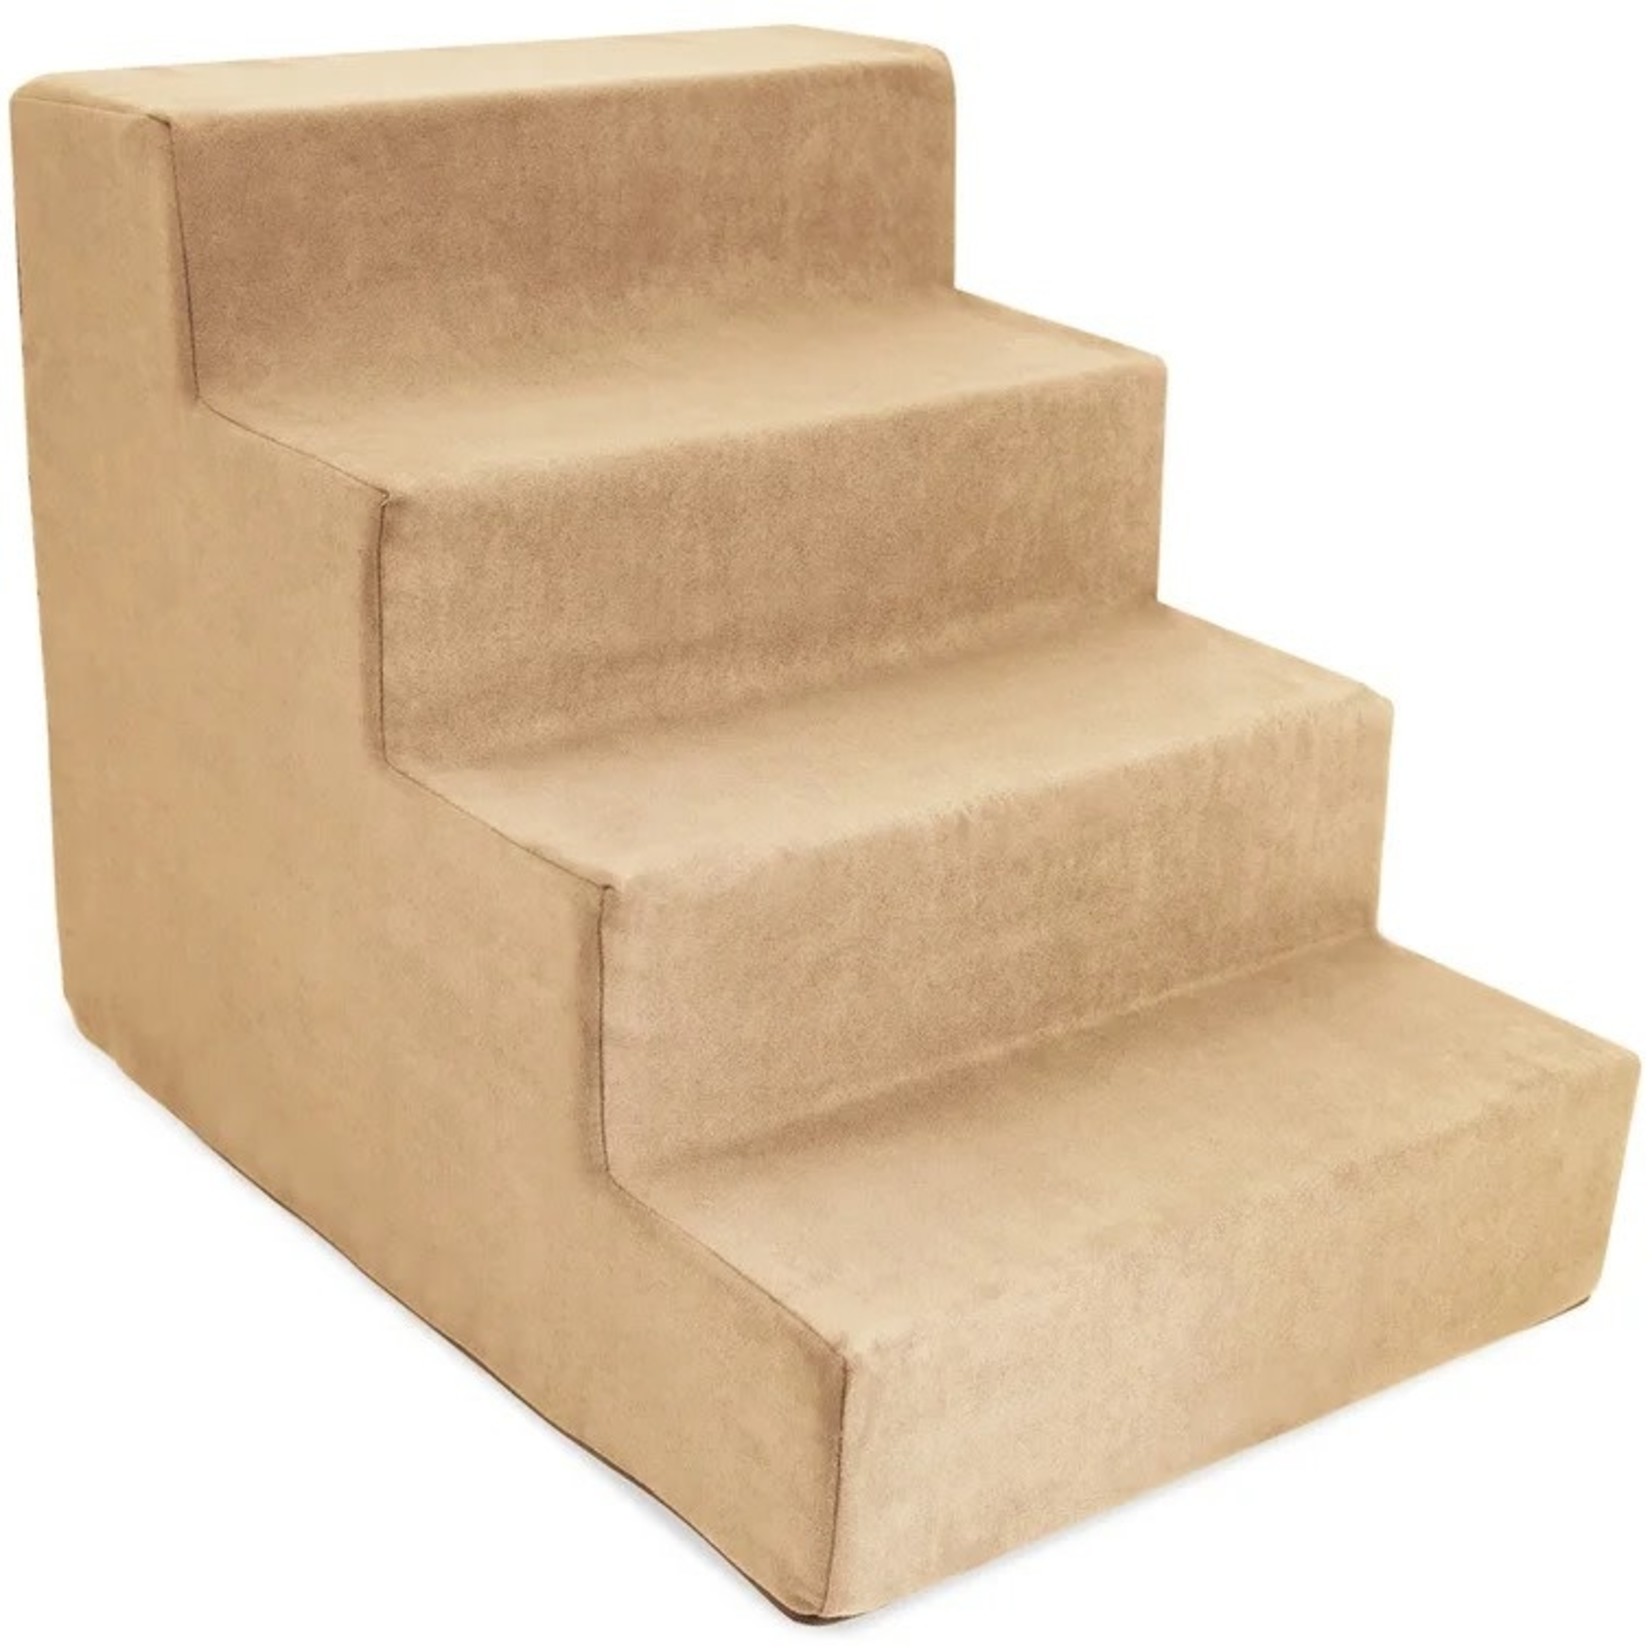 *Grommit High Density Foam 4 Step Pet Stairs - Beige